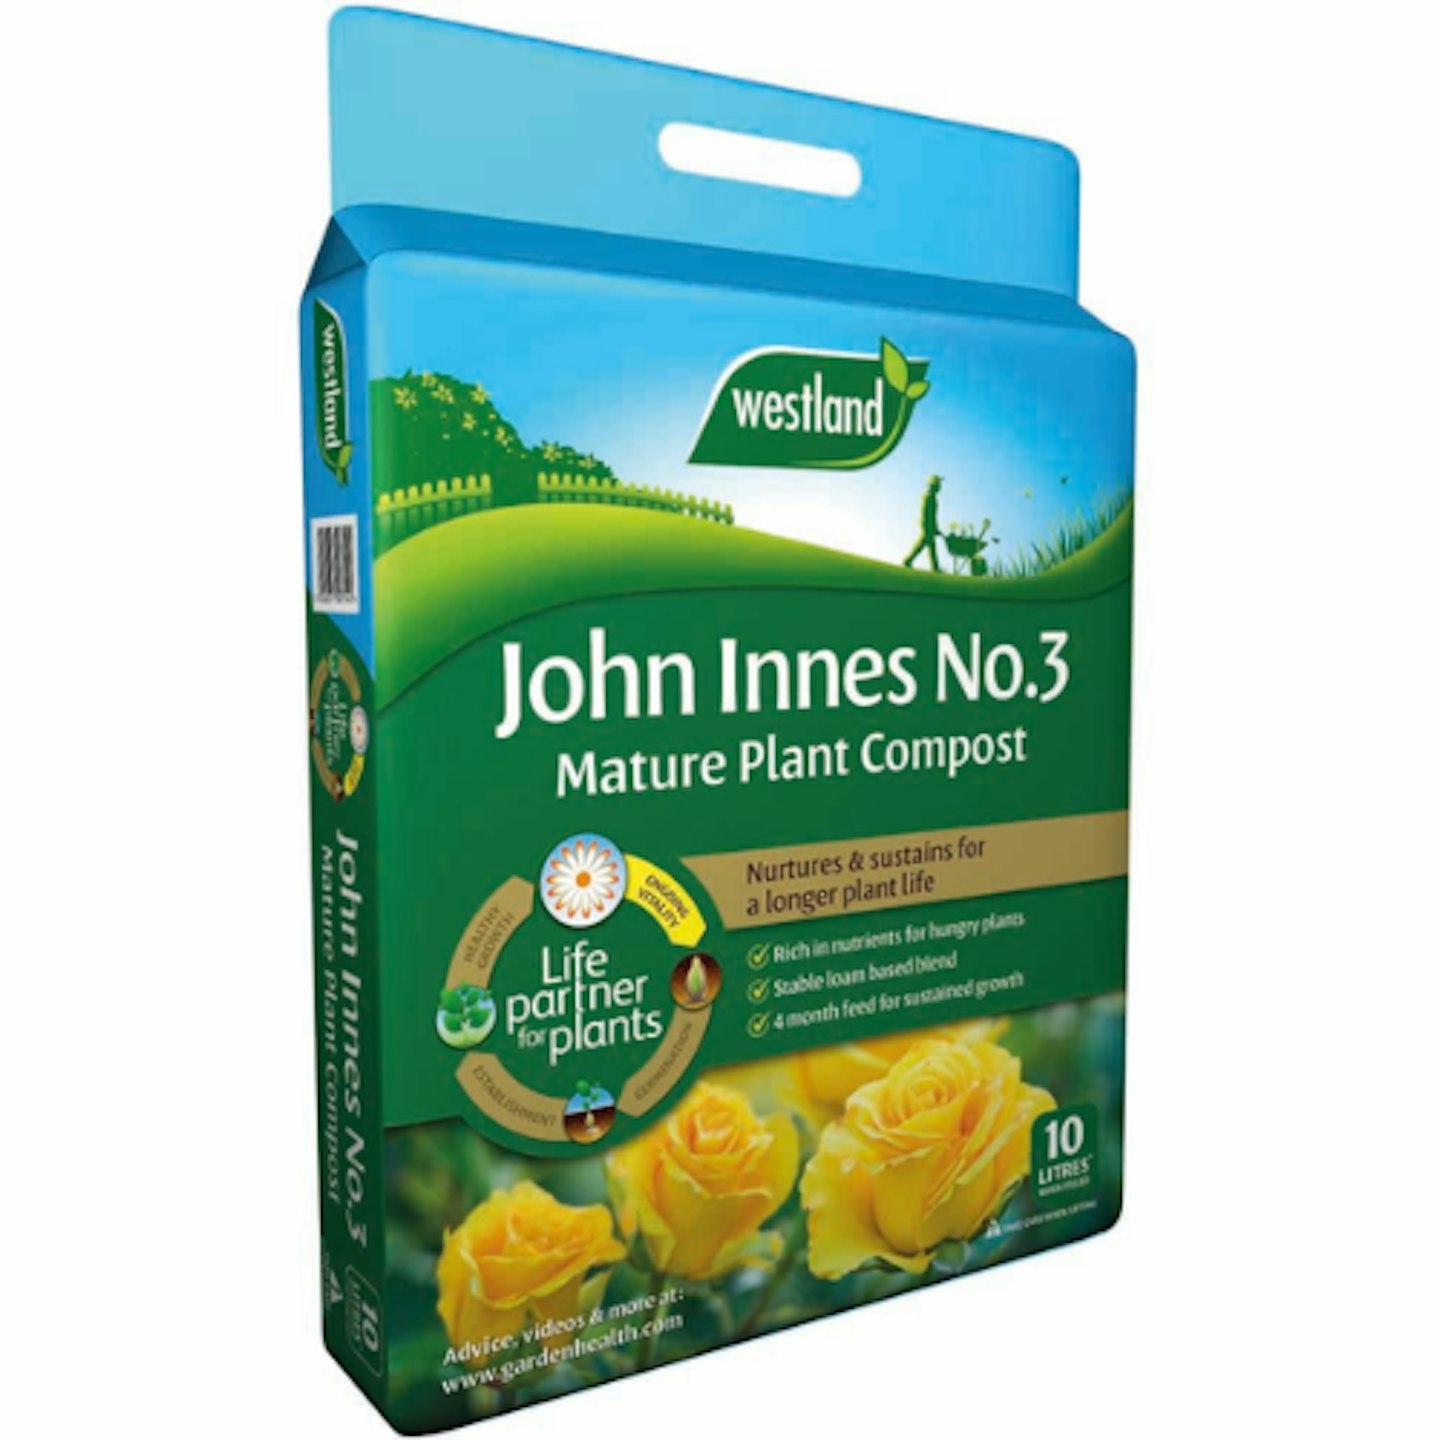 John Innes No 3 Mature Plant Compost, 10L